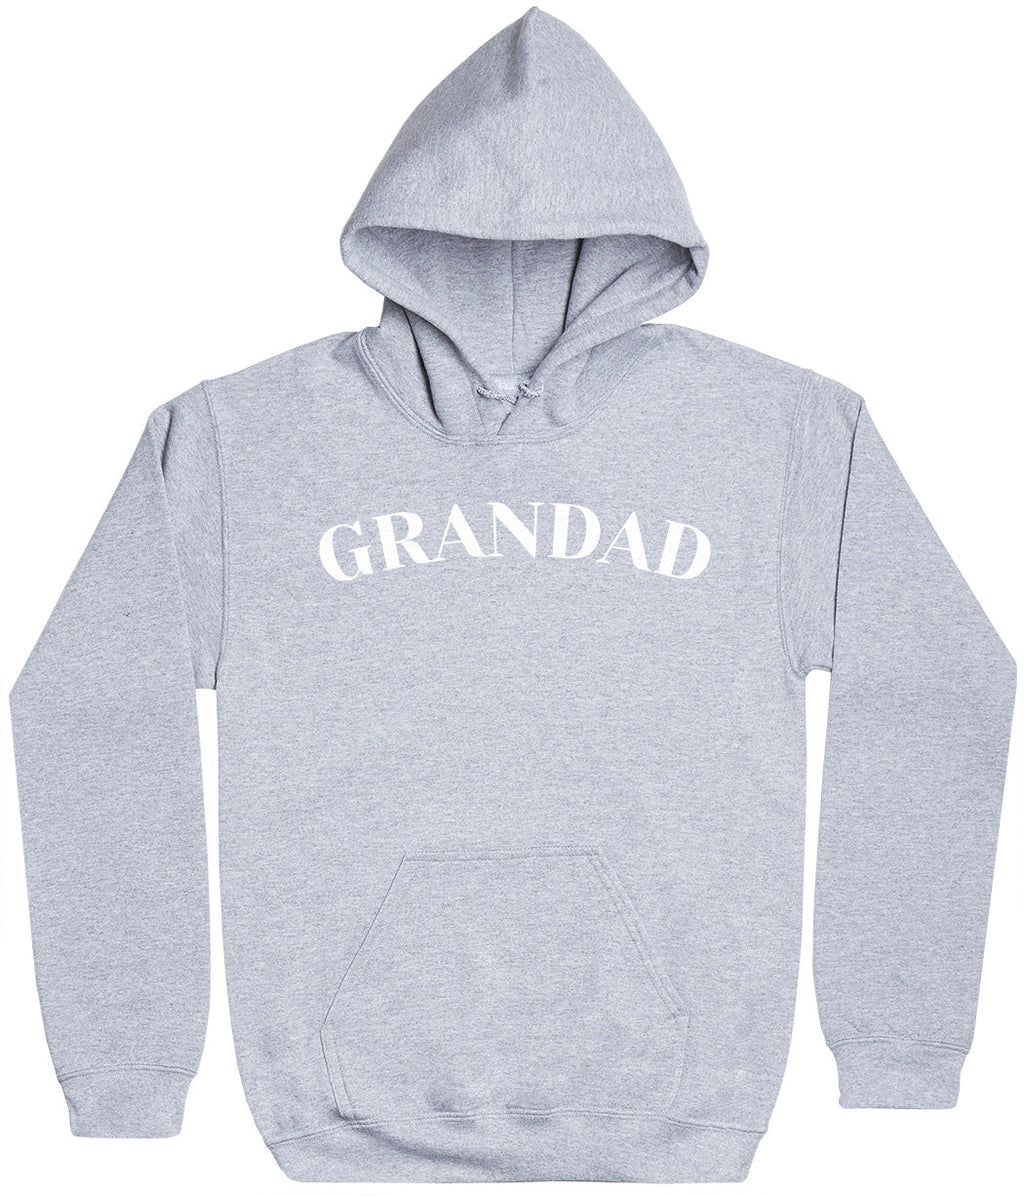 Grandad - White - Mens Hoodie (6567723630641)